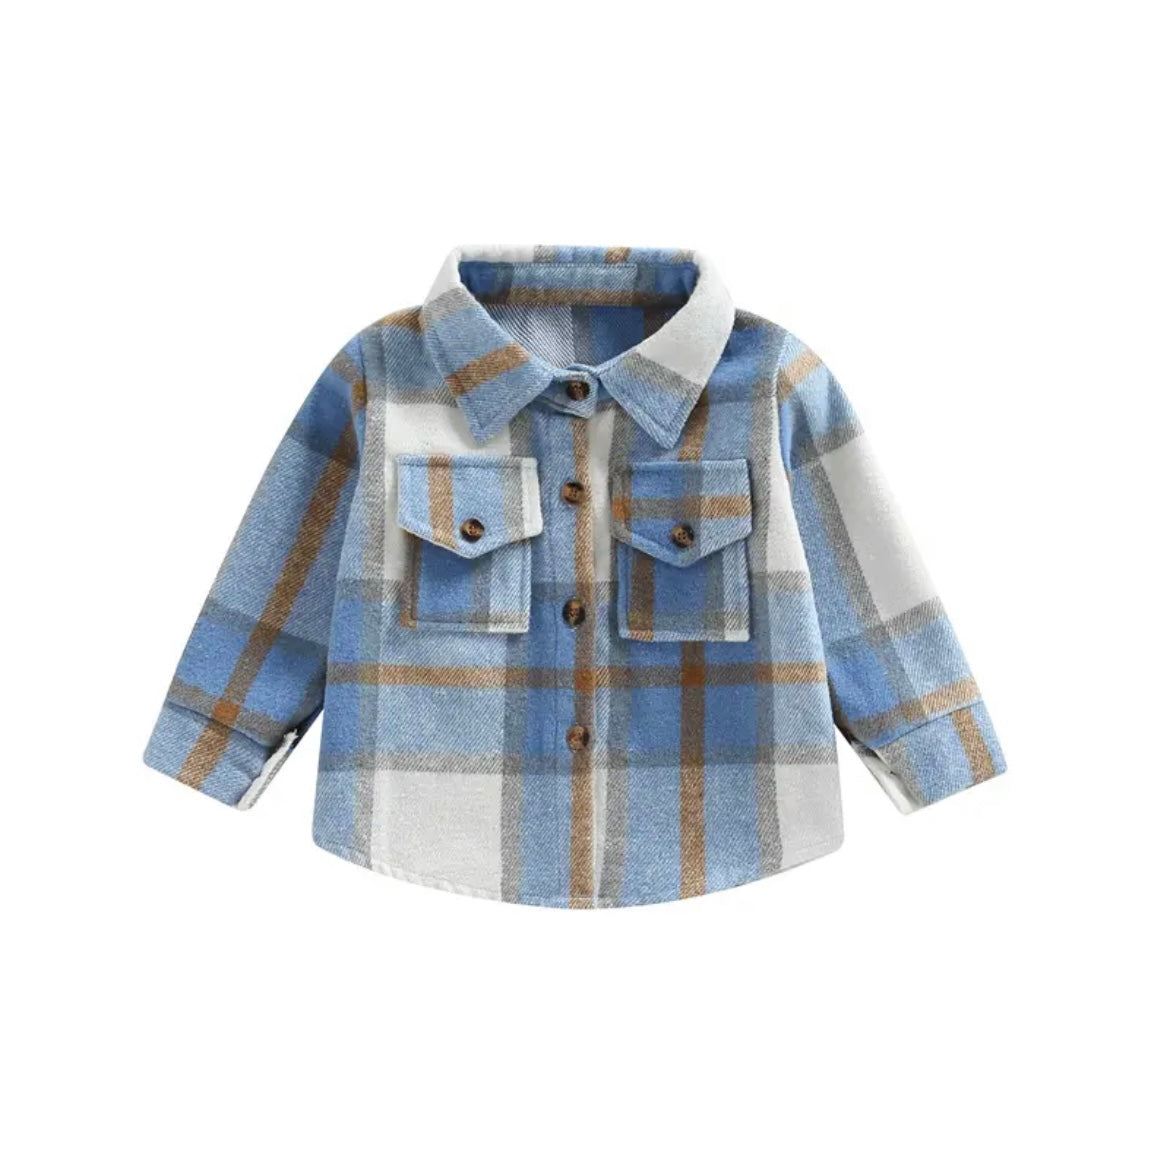 Toddler & Baby Plaid Shirt Spring Jacket